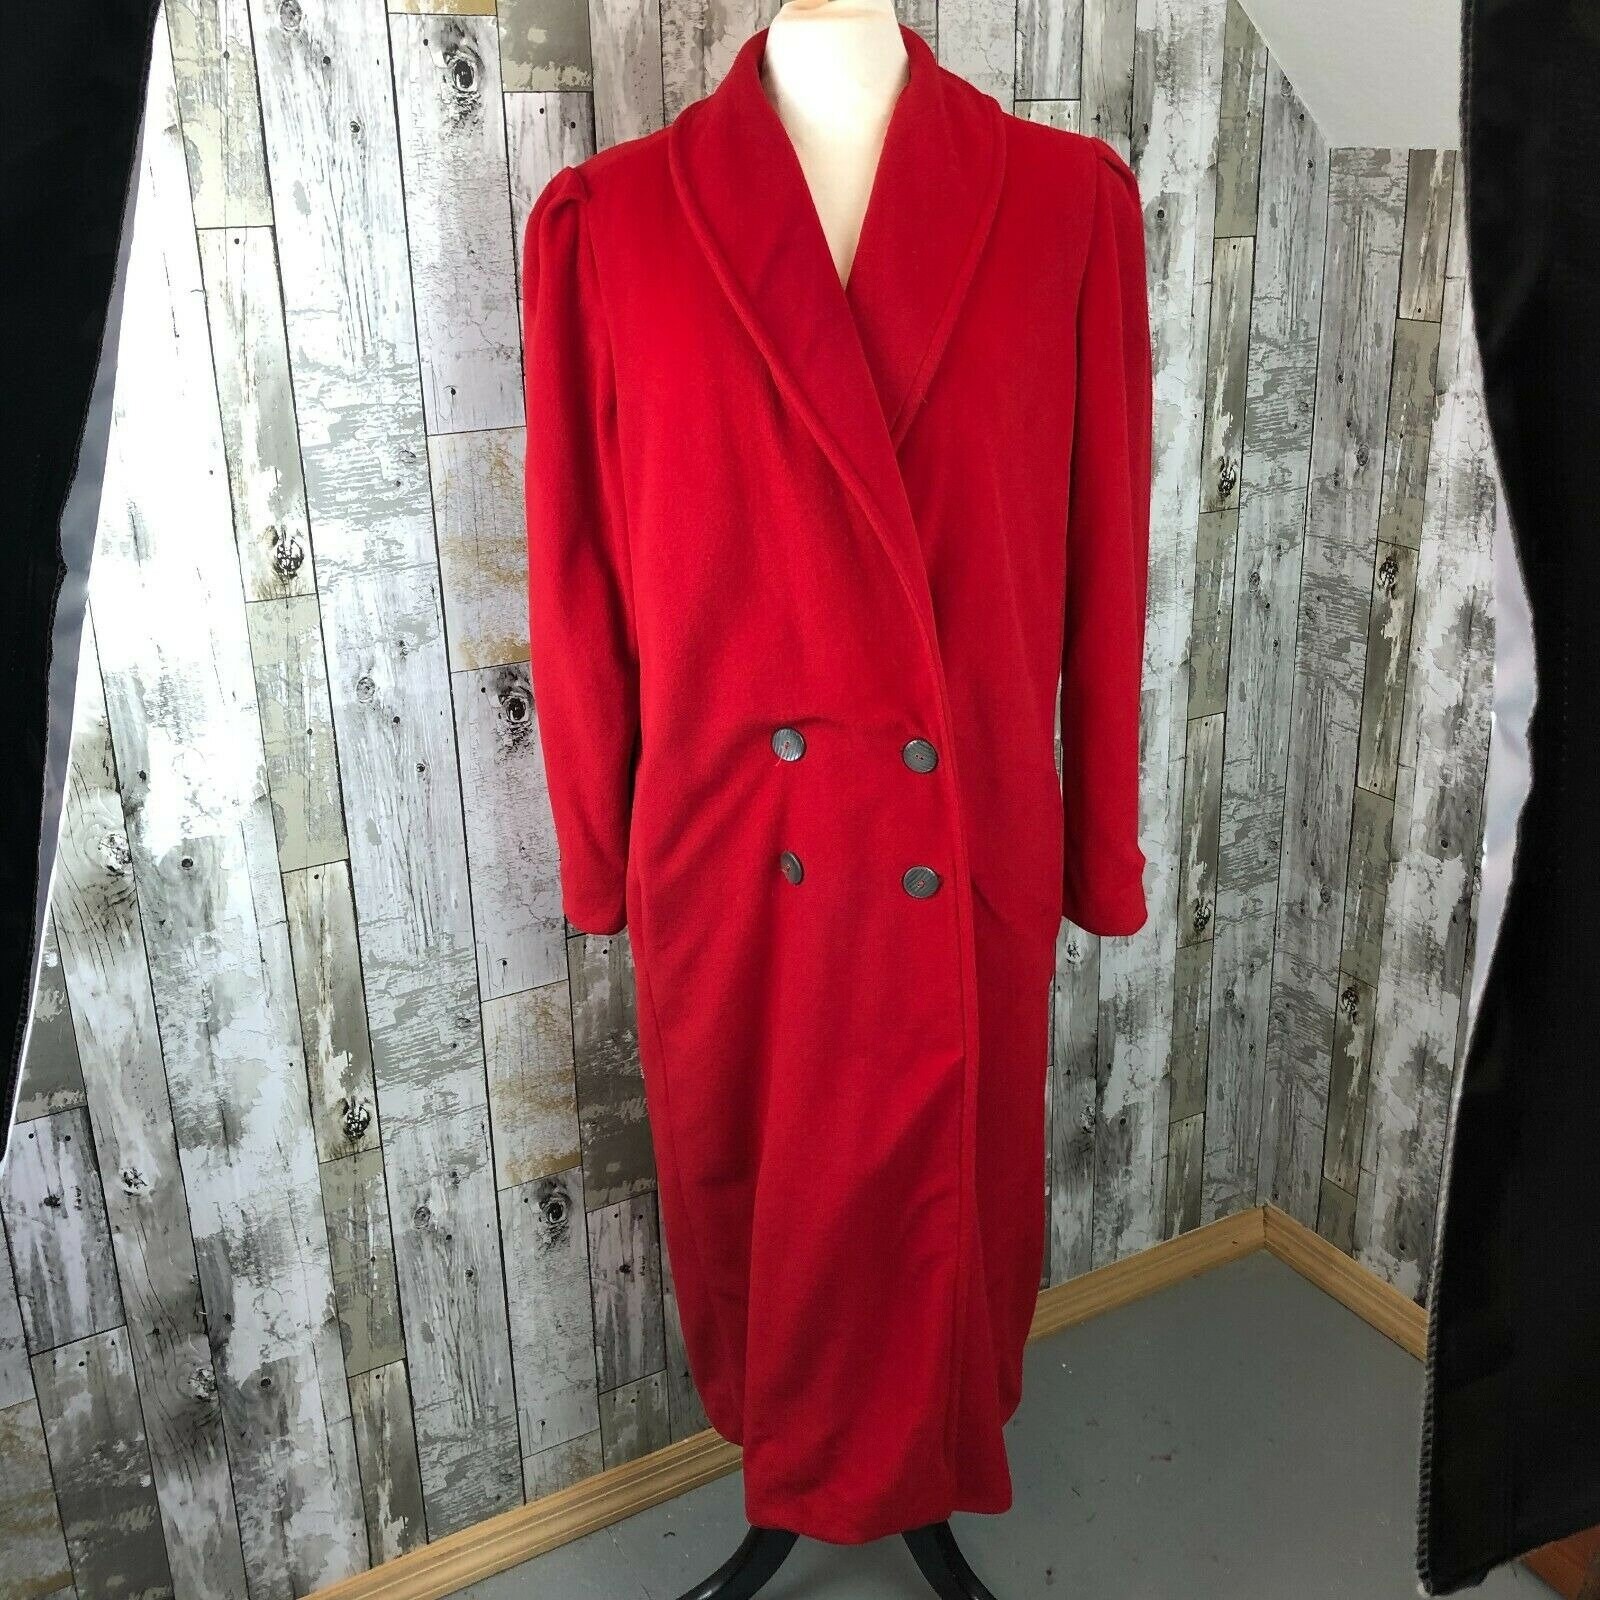 Kashmiracle Women's Red Trench Coat Wellington Fashion | Etsy UK